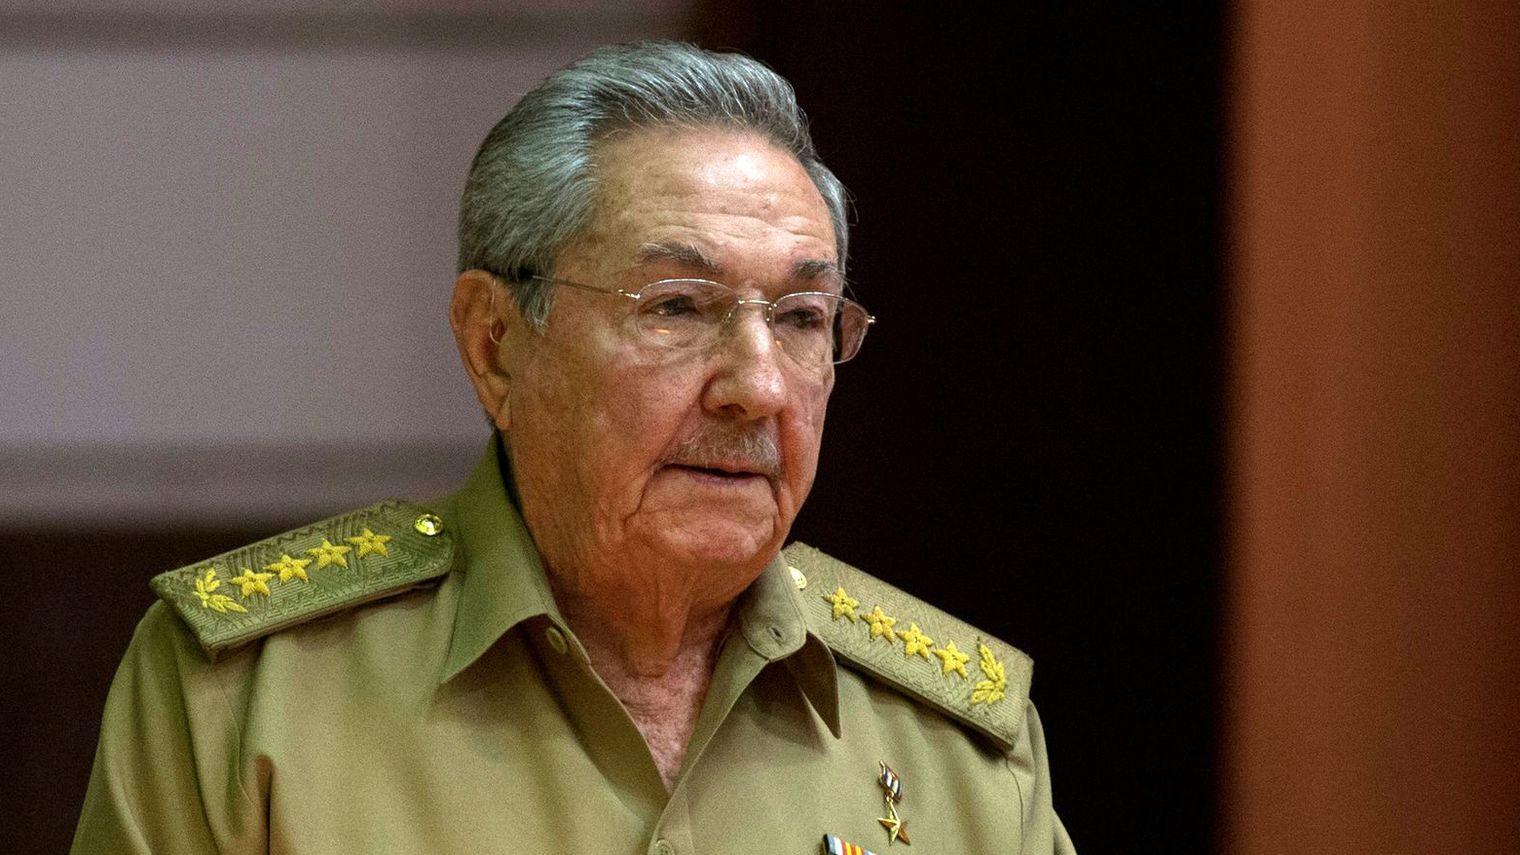 Cuba starts electoral cycle